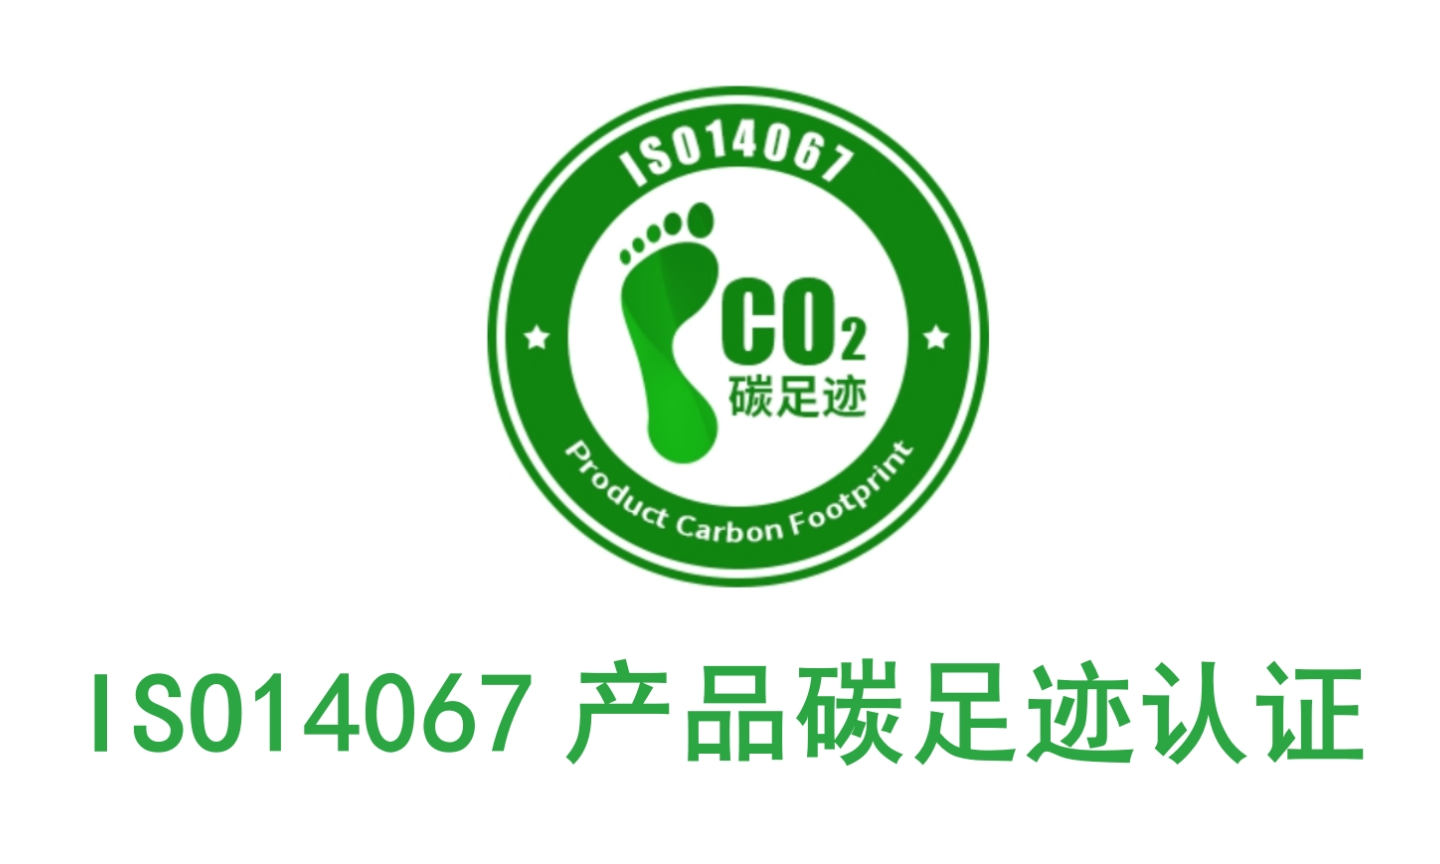 江门企业碳足迹认证价格,碳足迹认证